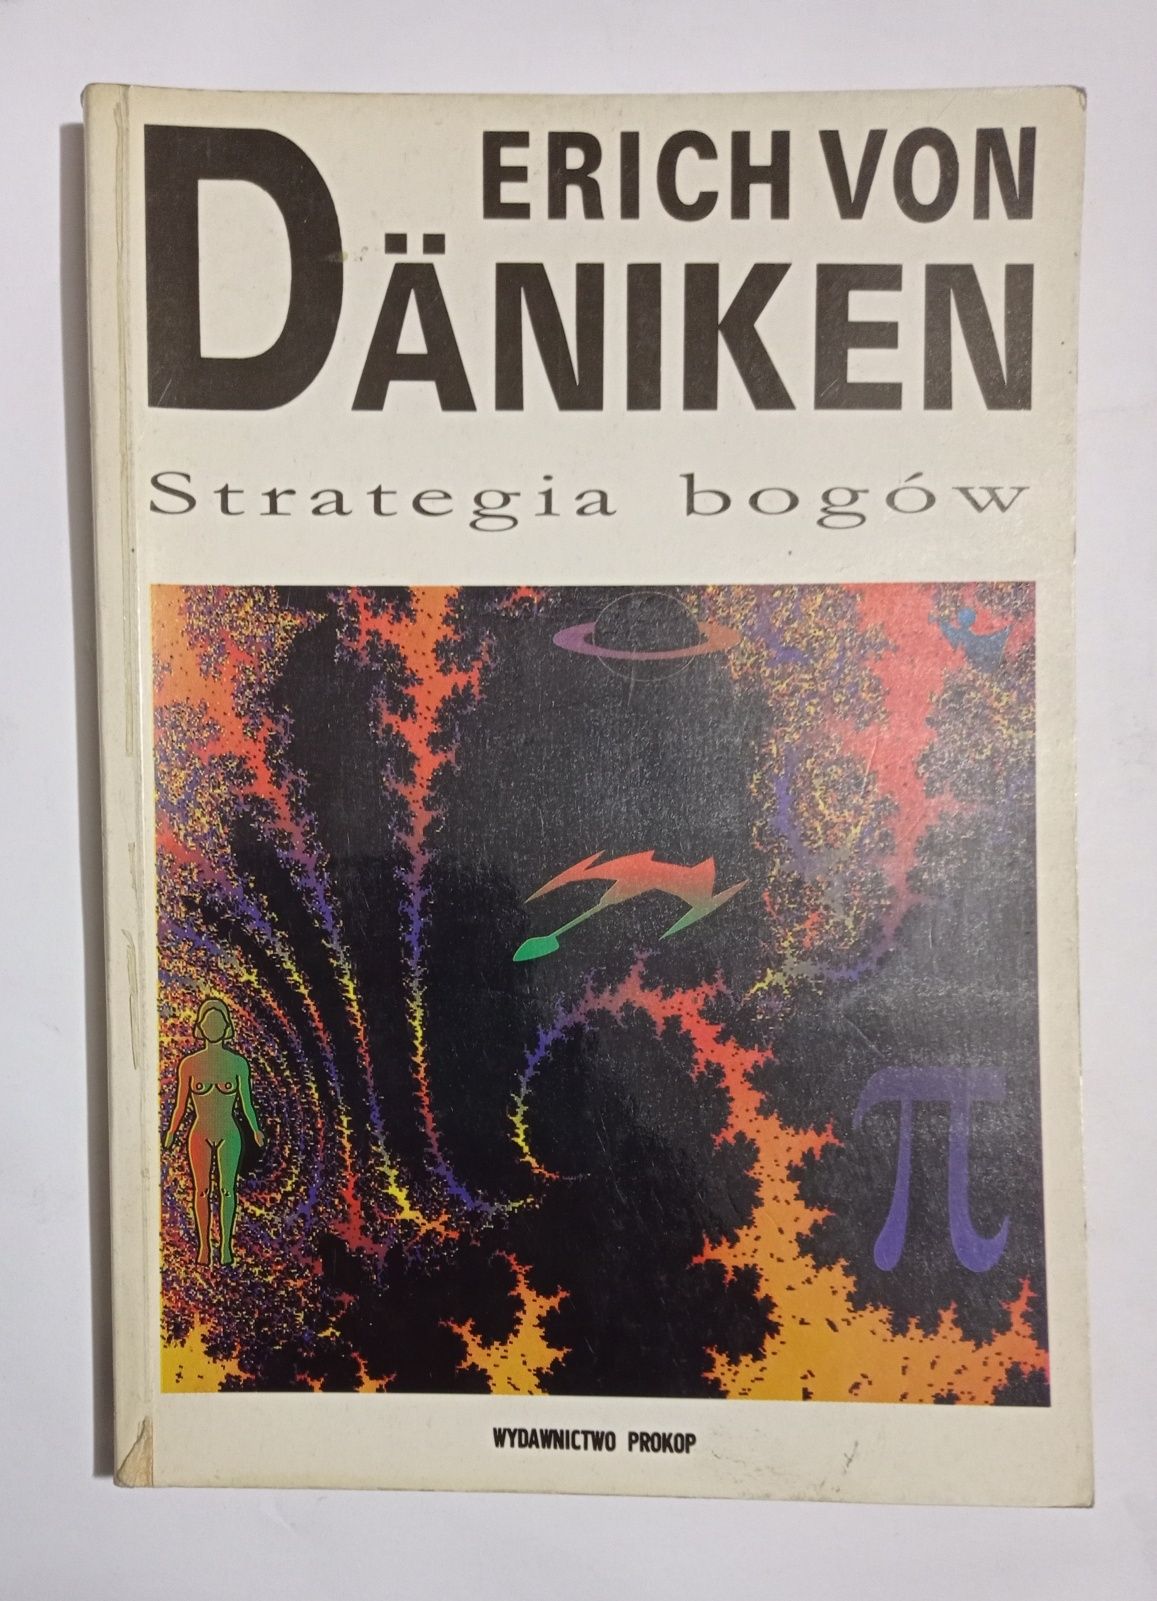 Erich von daniken zestaw oczy sfinksa miasta bogowie strategia